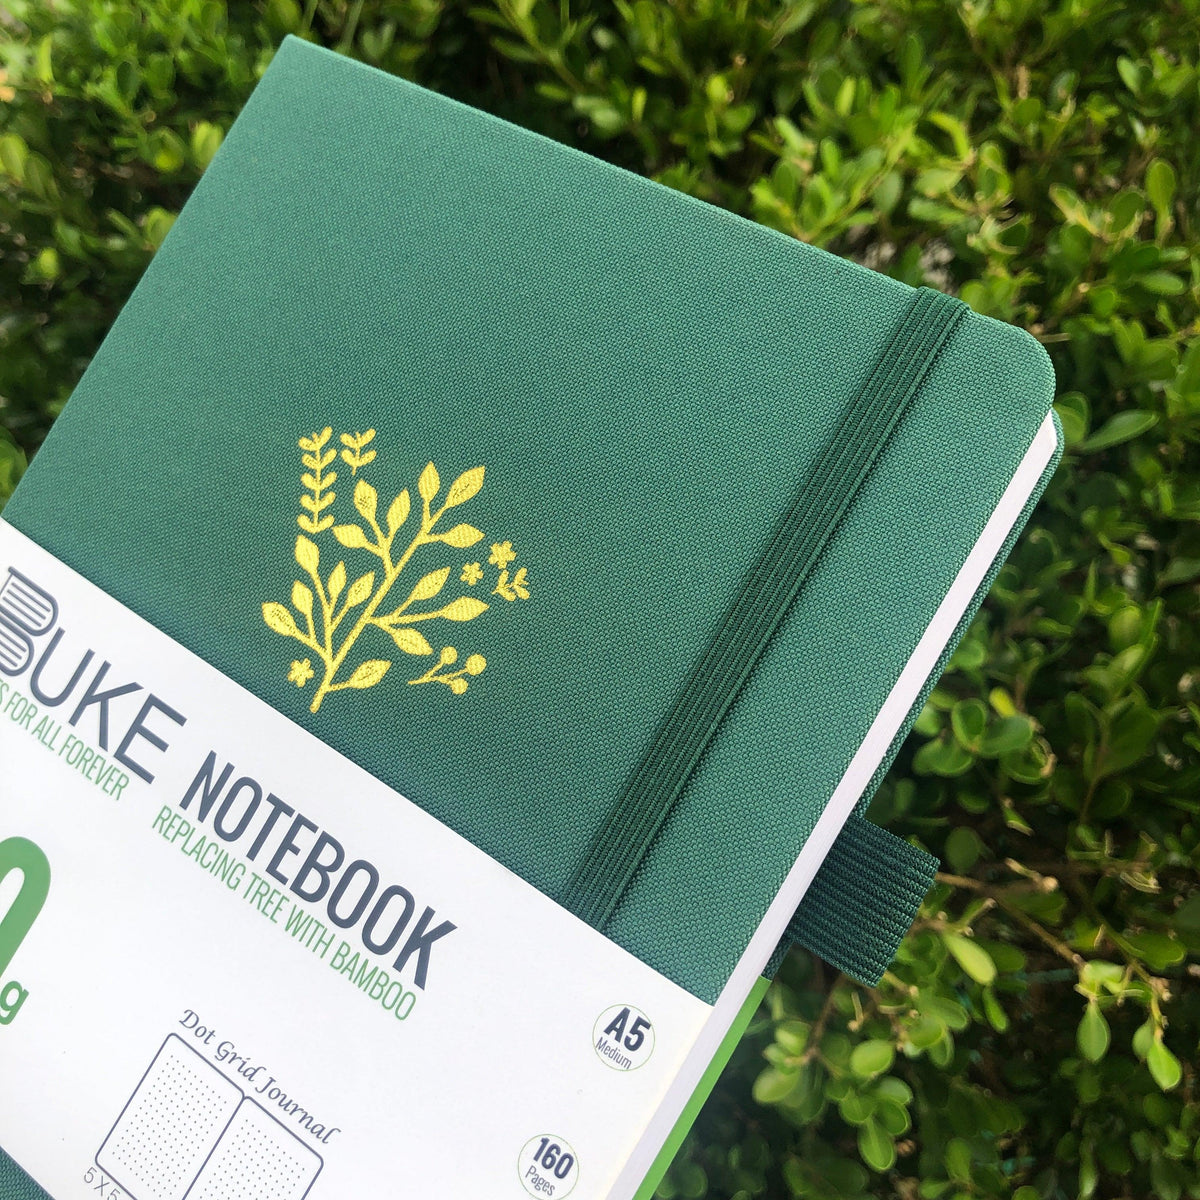 Sketchbook Review: BUKE A5 Size Hardcover Sketchbook Journal